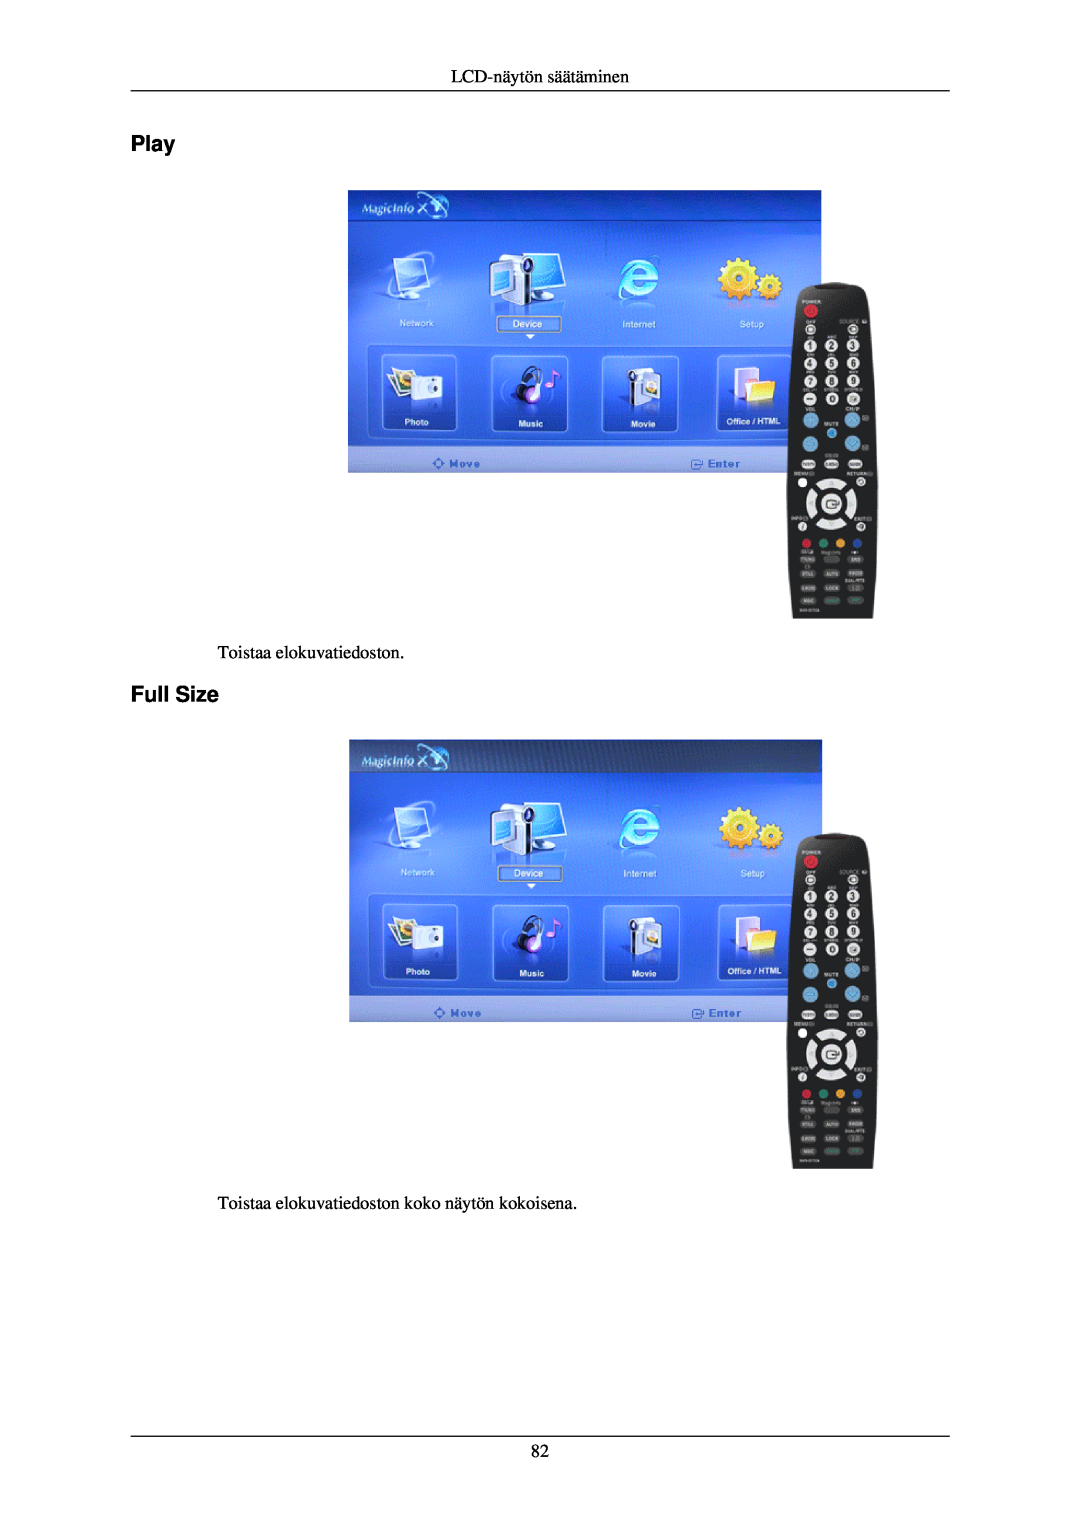 Samsung LH46TCUMBC/EN, LH40TCUMBG/EN, LH40TCQMBG/EN manual Play, Full Size, LCD-näytön säätäminen, Toistaa elokuvatiedoston 